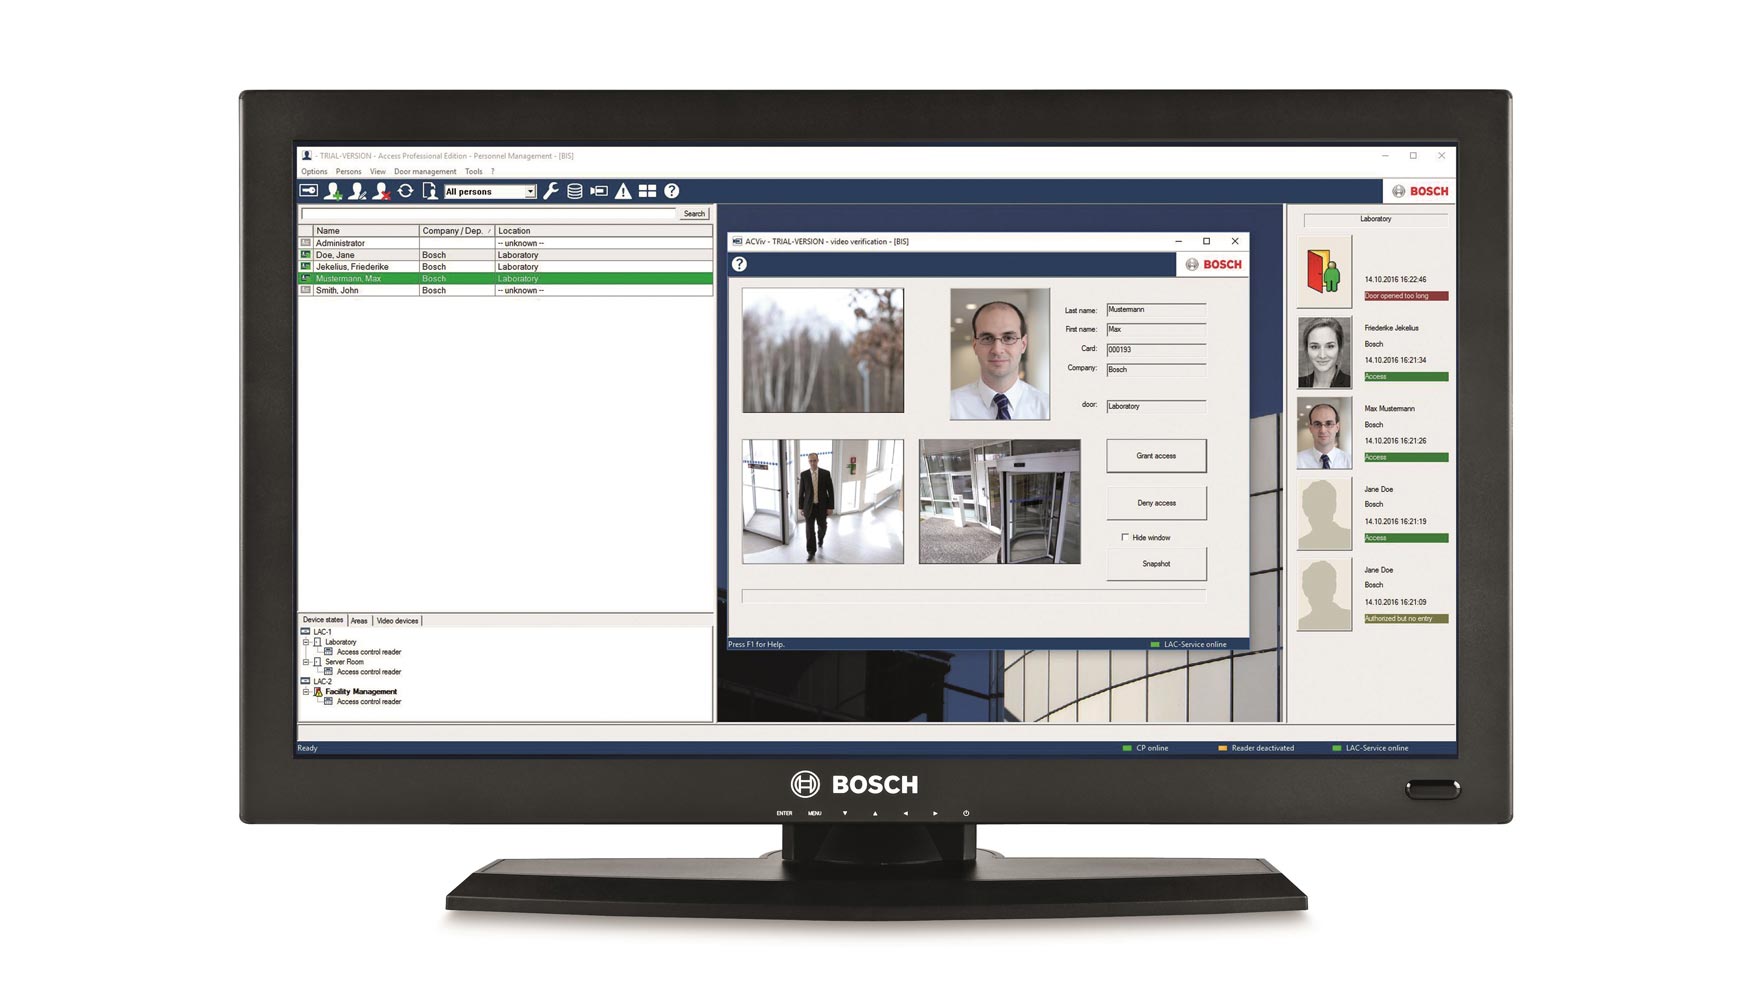 Bosch ha dotado al software de control de accesos de una interfaz más sencilla, así como un nuevo aspecto y manejo